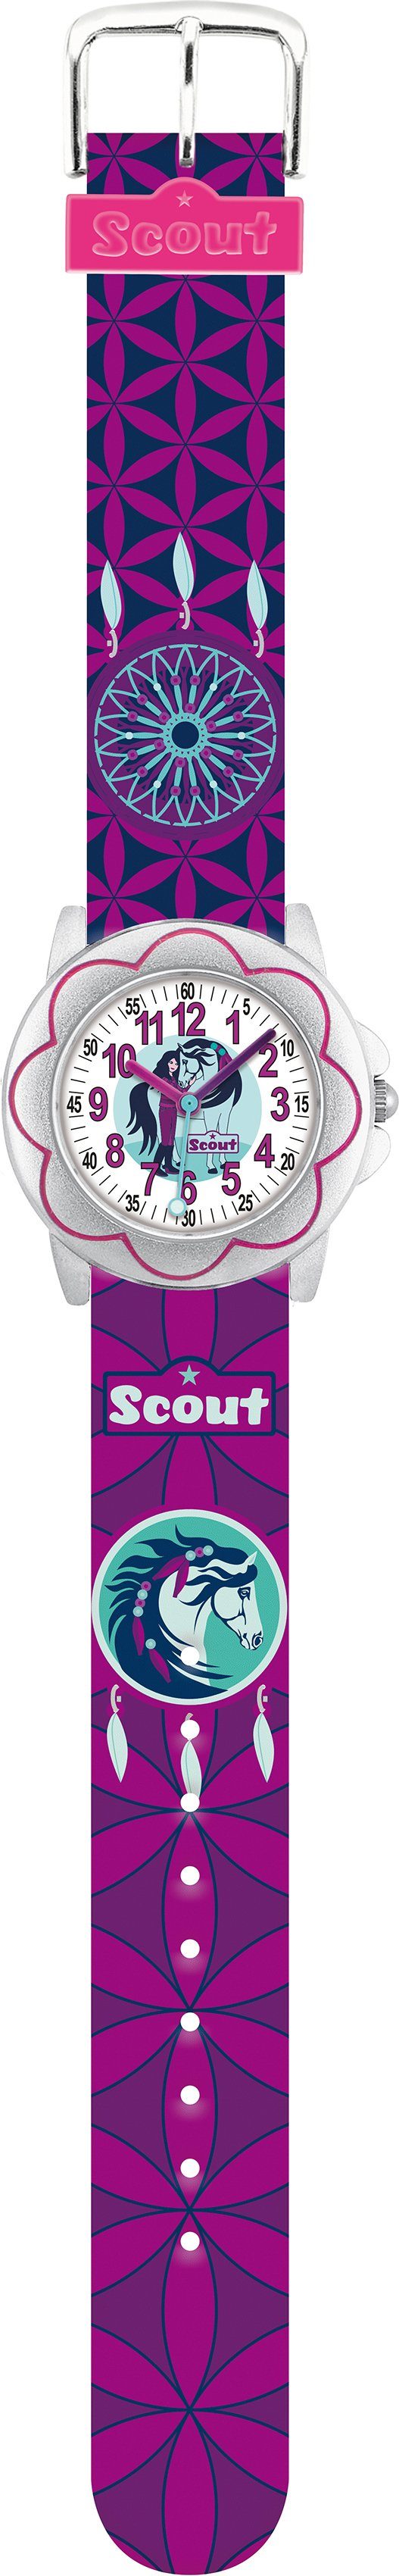 Scout Quarzuhr Star Kids, 280393034, ideal auch als Geschenk